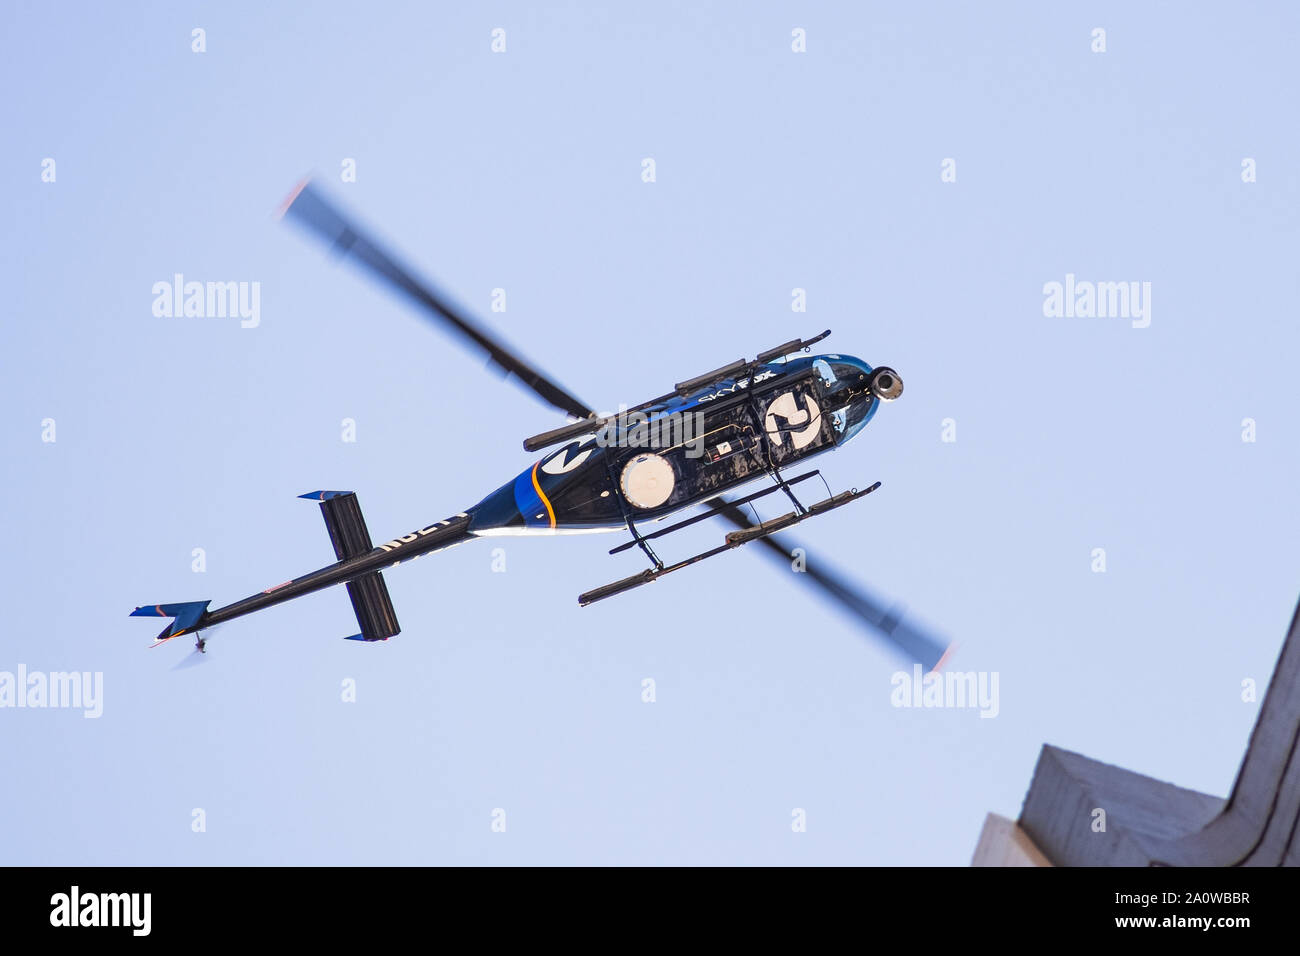 Sep 20, 2019 San Francisco / CA / STATI UNITI D'AMERICA - Sky Fox 2 News elicottero puntando il cursore in alto nel cielo Foto Stock